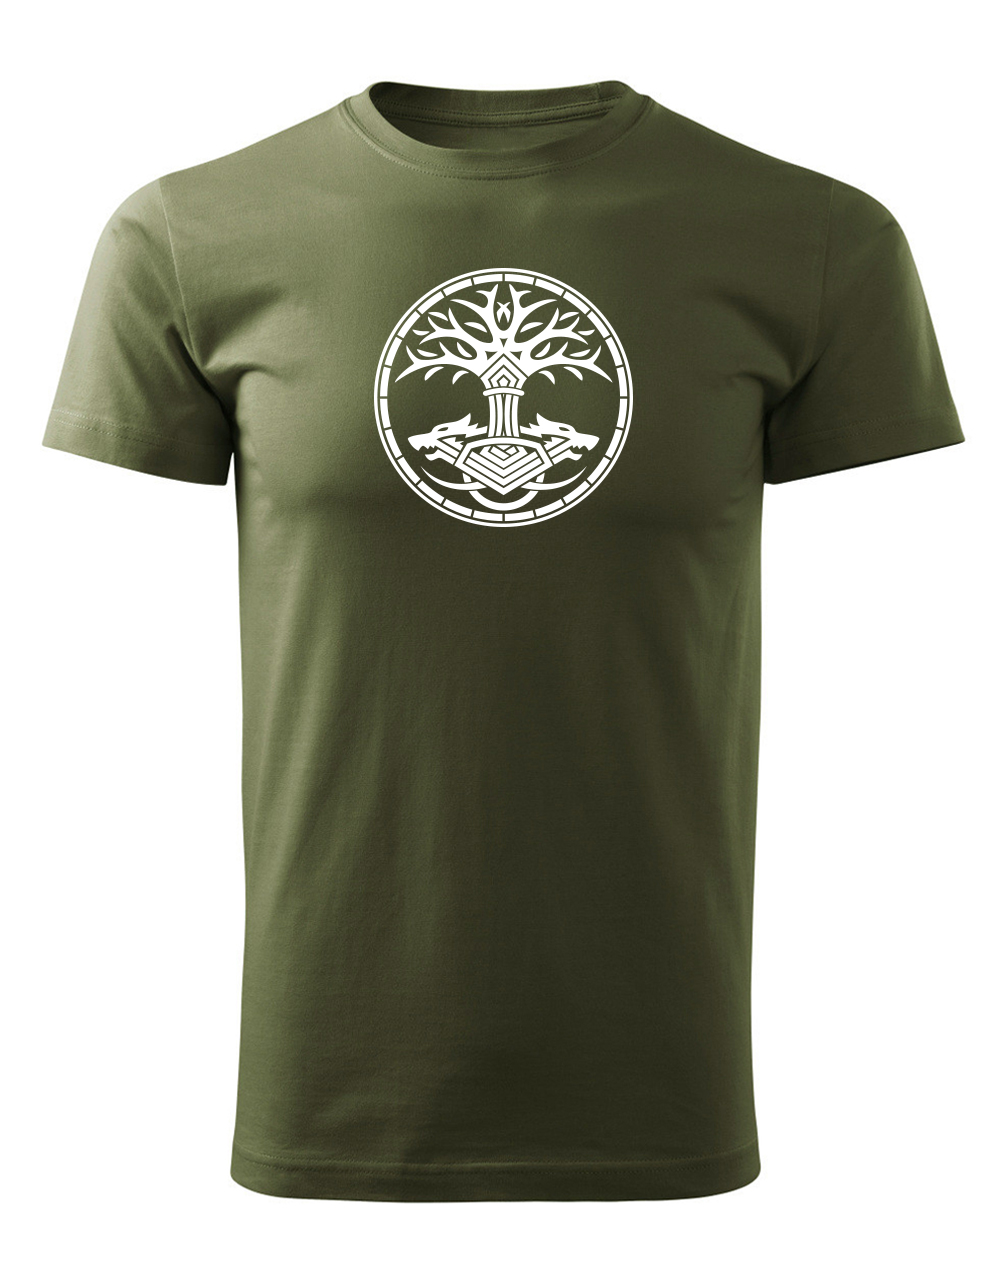 Pánské tričko s potiskem Yggdrasil vojenská zelená